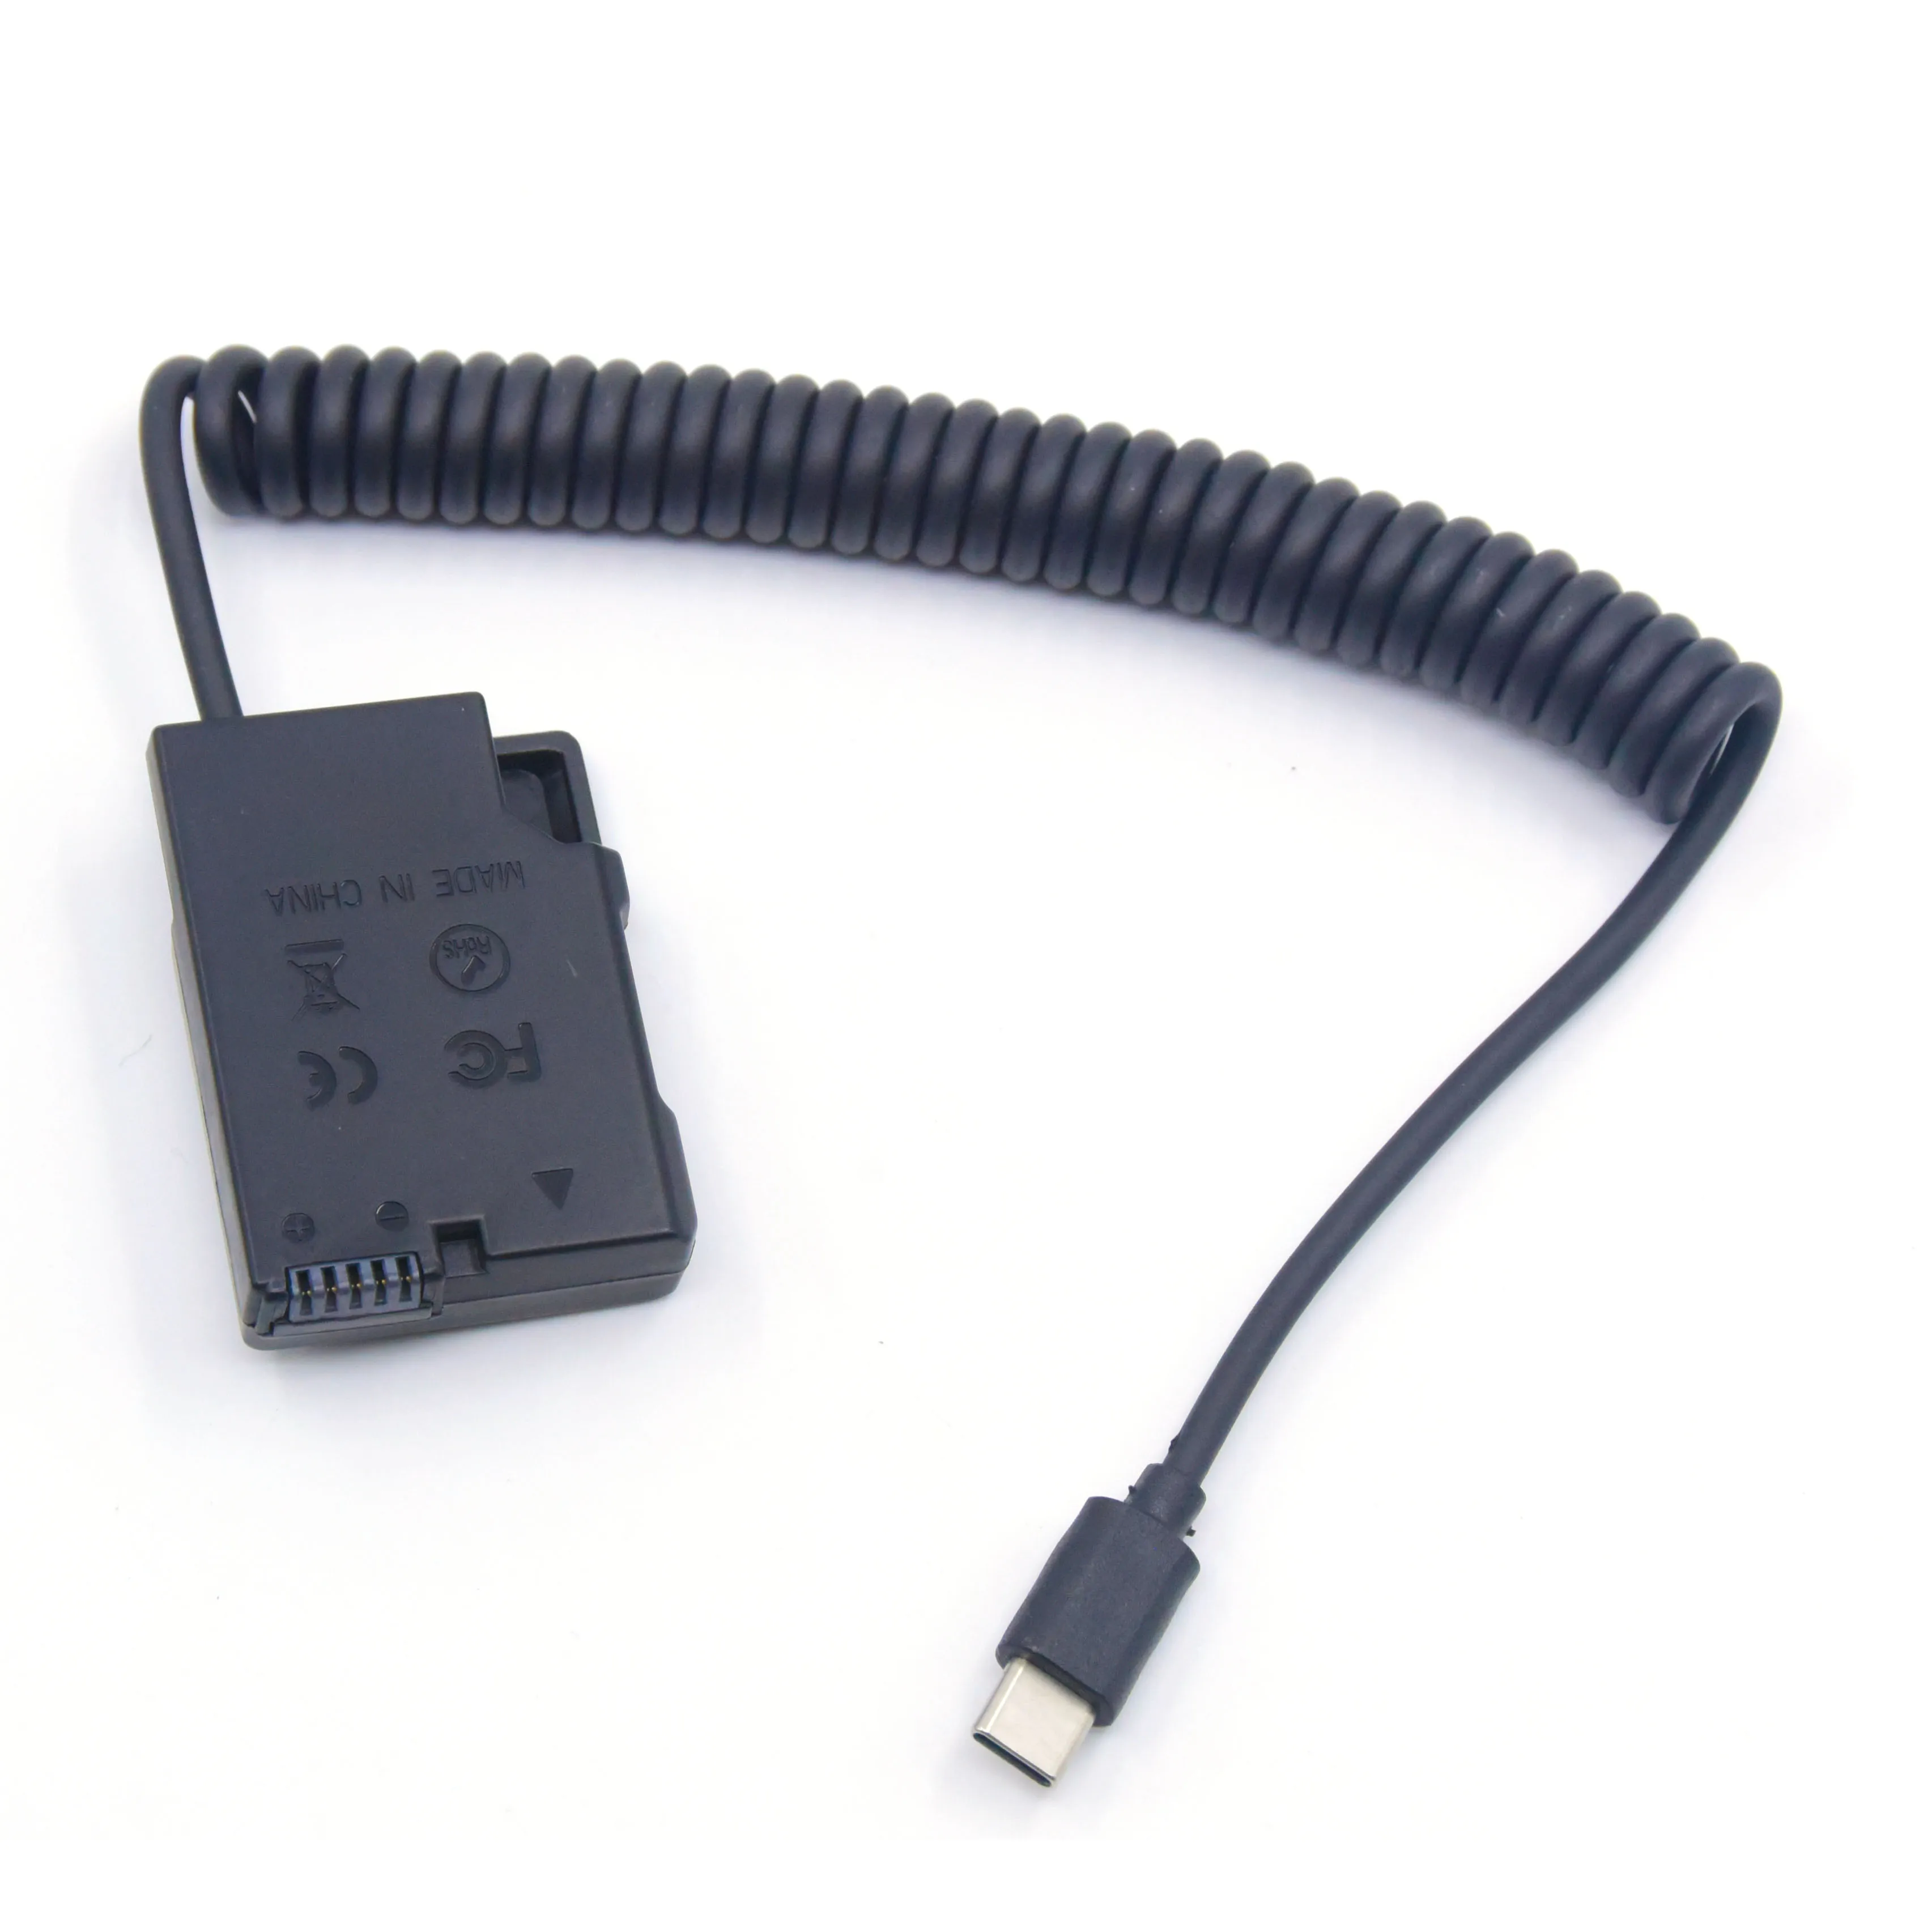 

USB Type-C Power Bank Cable EN-EL14 EP-5A Dummy Battery DC Coupler For Nikon D5300 P7000 P7700 D3100 D3400 D5100 D5200 P7100